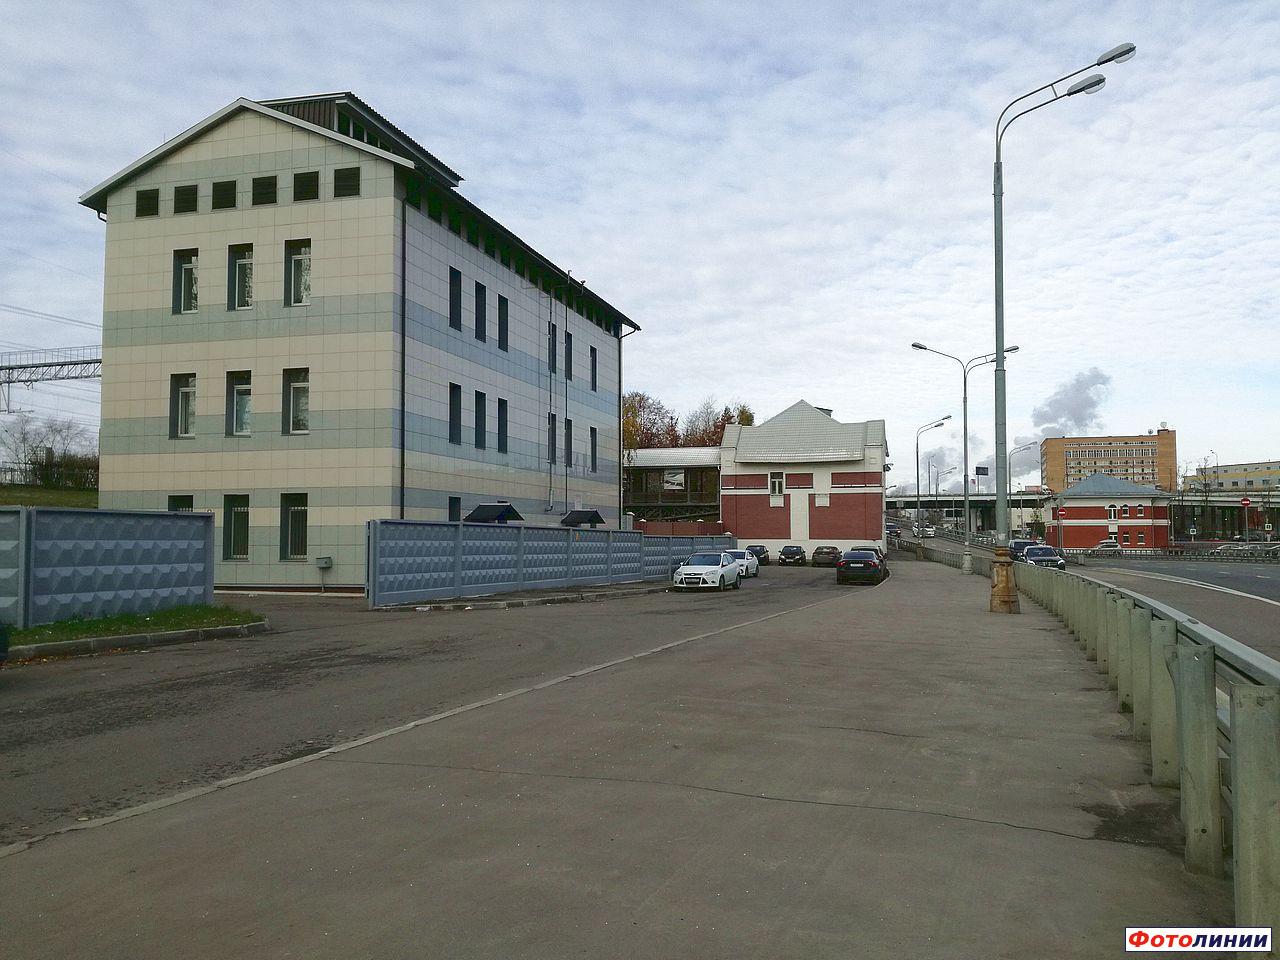 Станционные здания, вид со стороны города